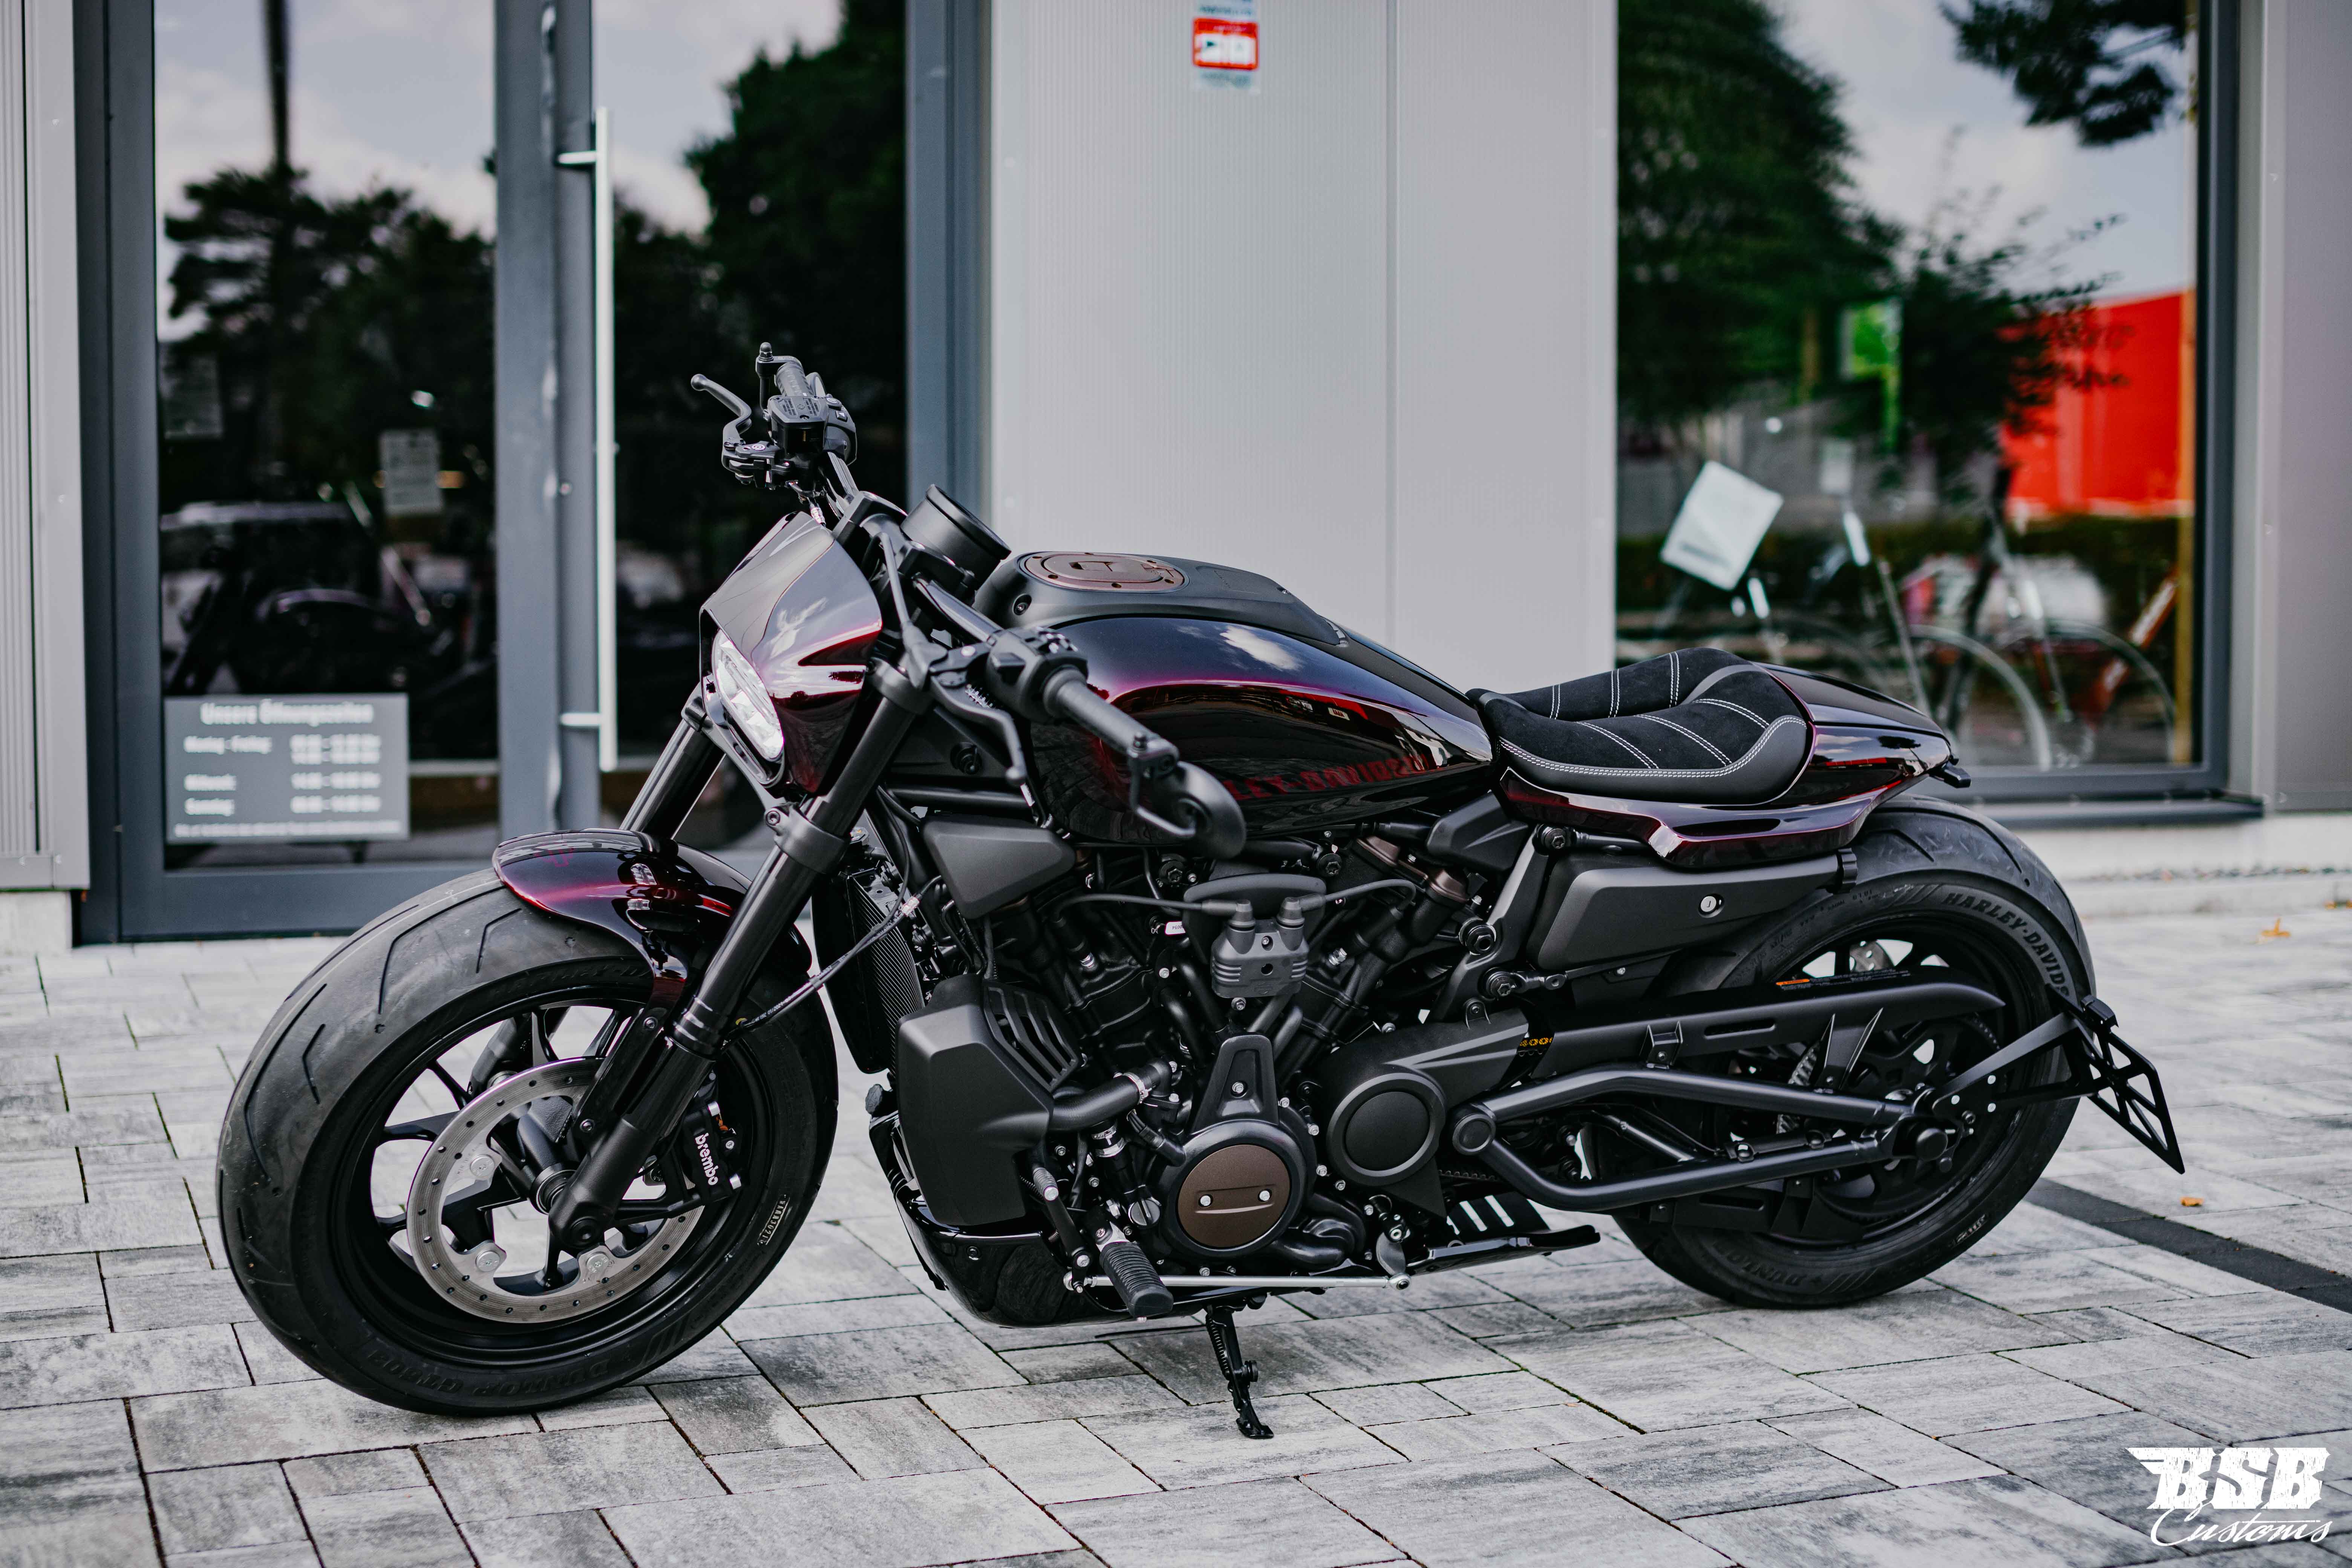 2022 Harley Davidson Sportster S 1252 ccm 90 kw volle Werksgarantie